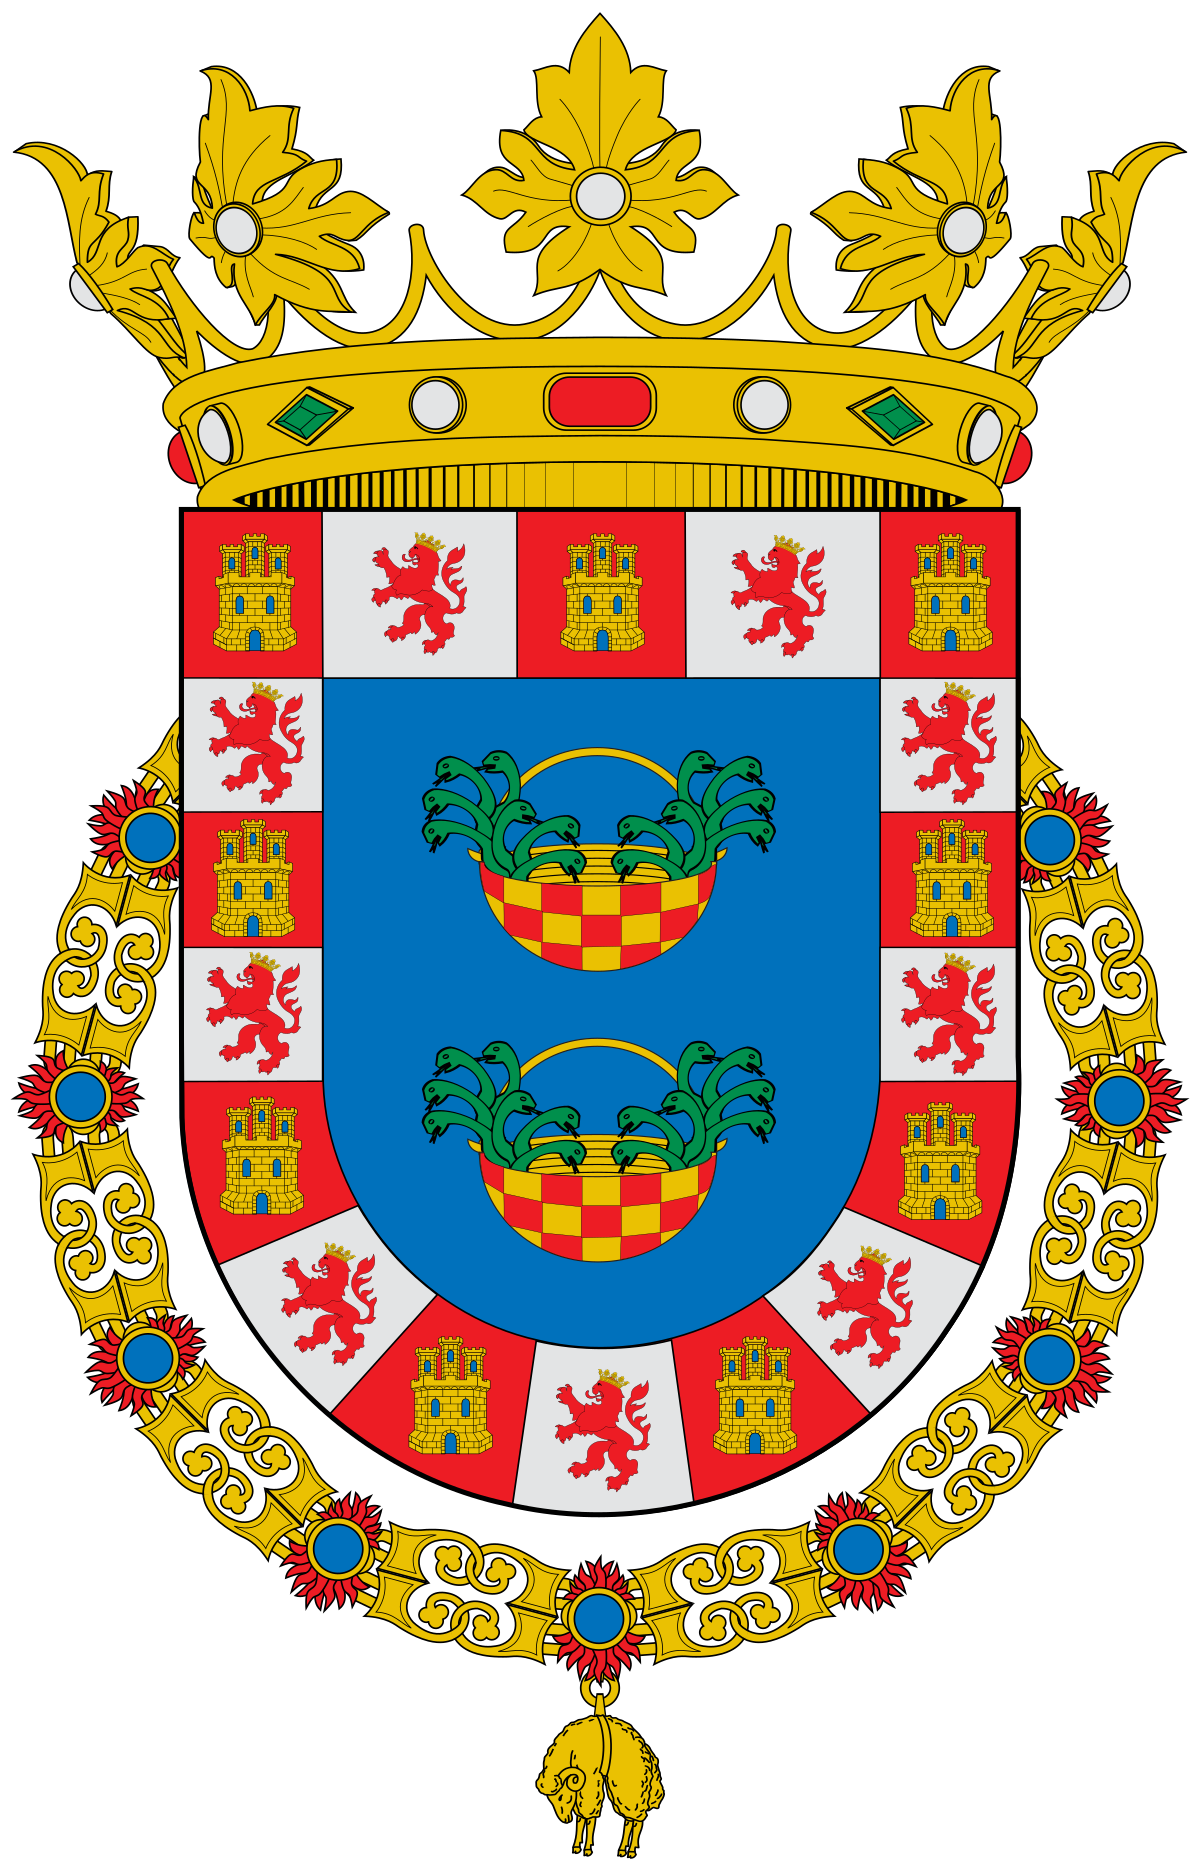 Knights of Sidonia - Wikipedia